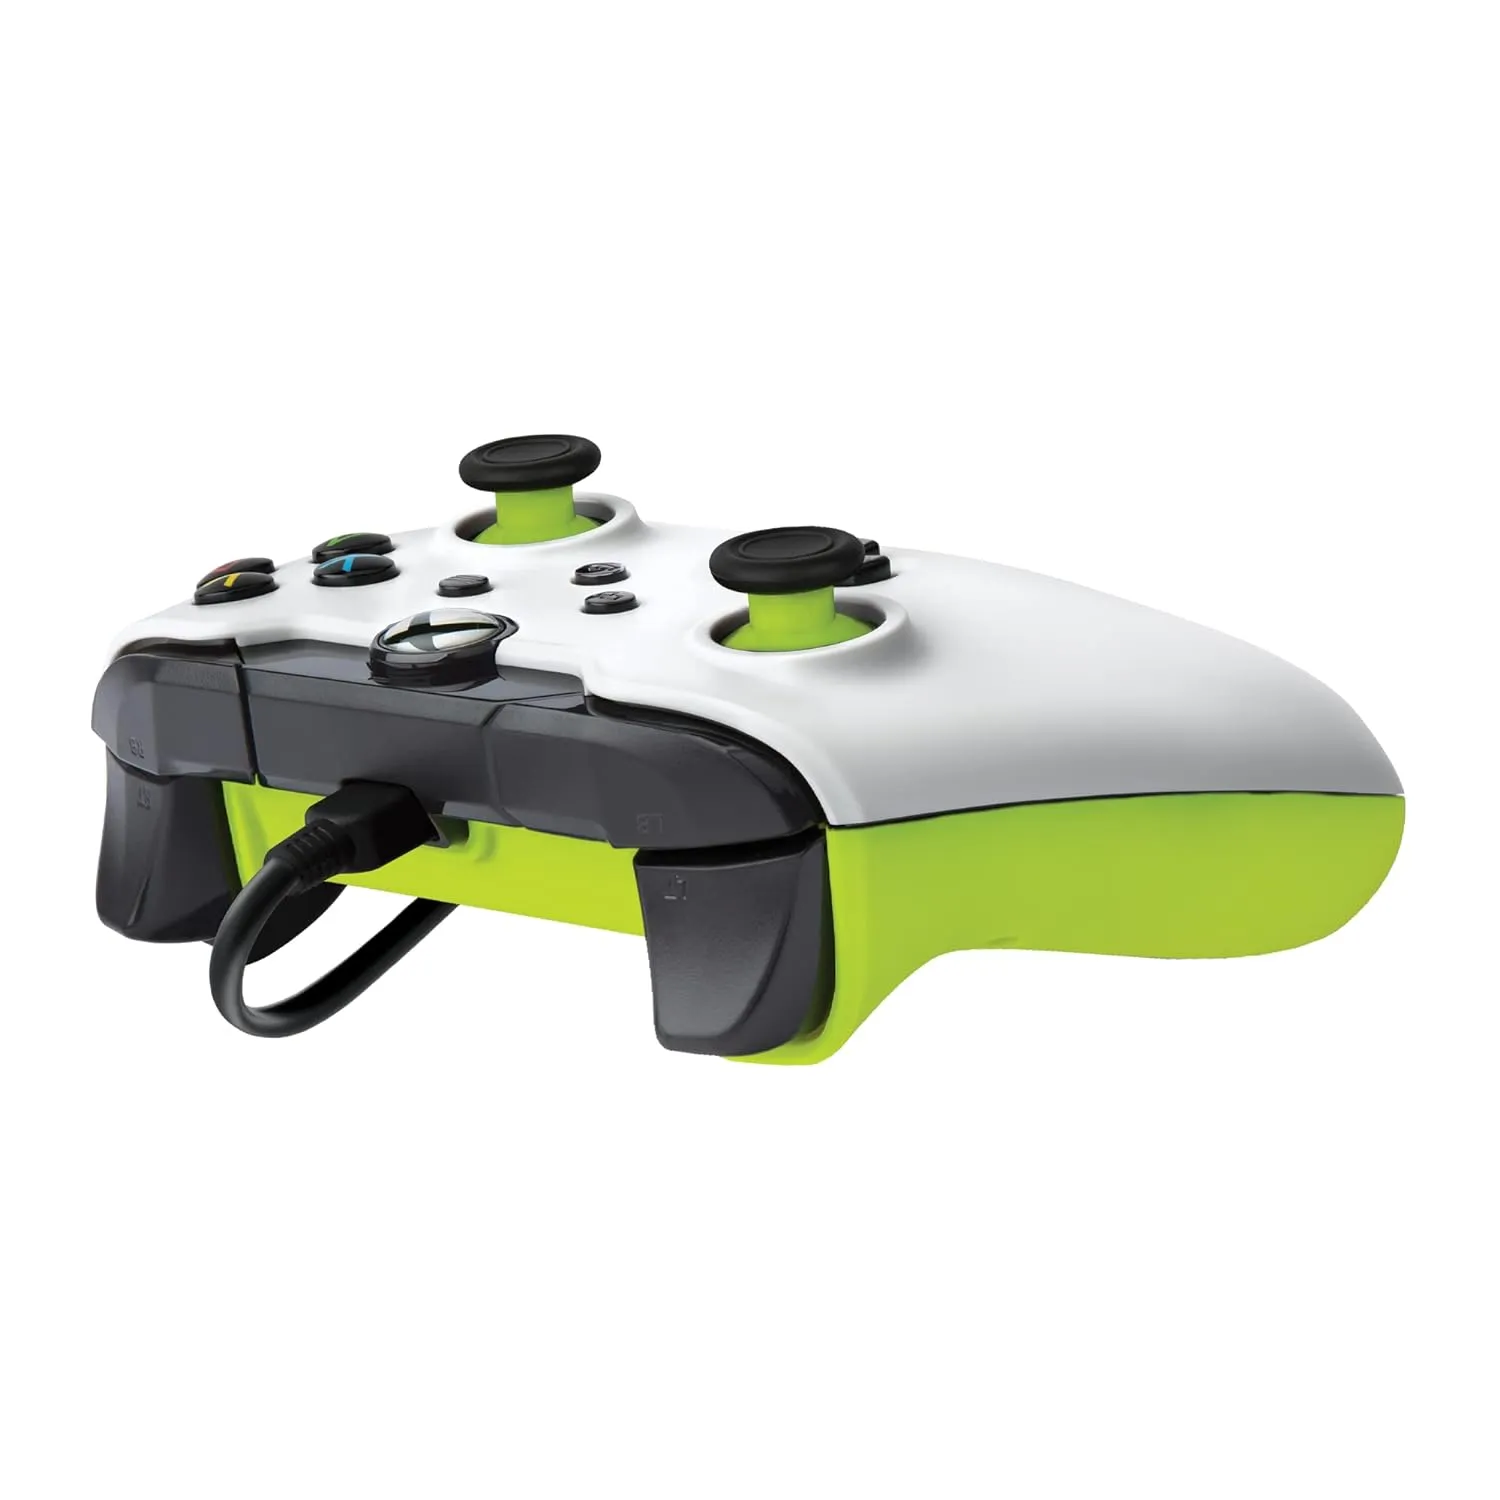 Control De  Xbox Con Cable Pdp - Xbox Series X | S/Xbox One, Compatible Con Aplicaciones - Blanco Eléctrico/ Amarillo